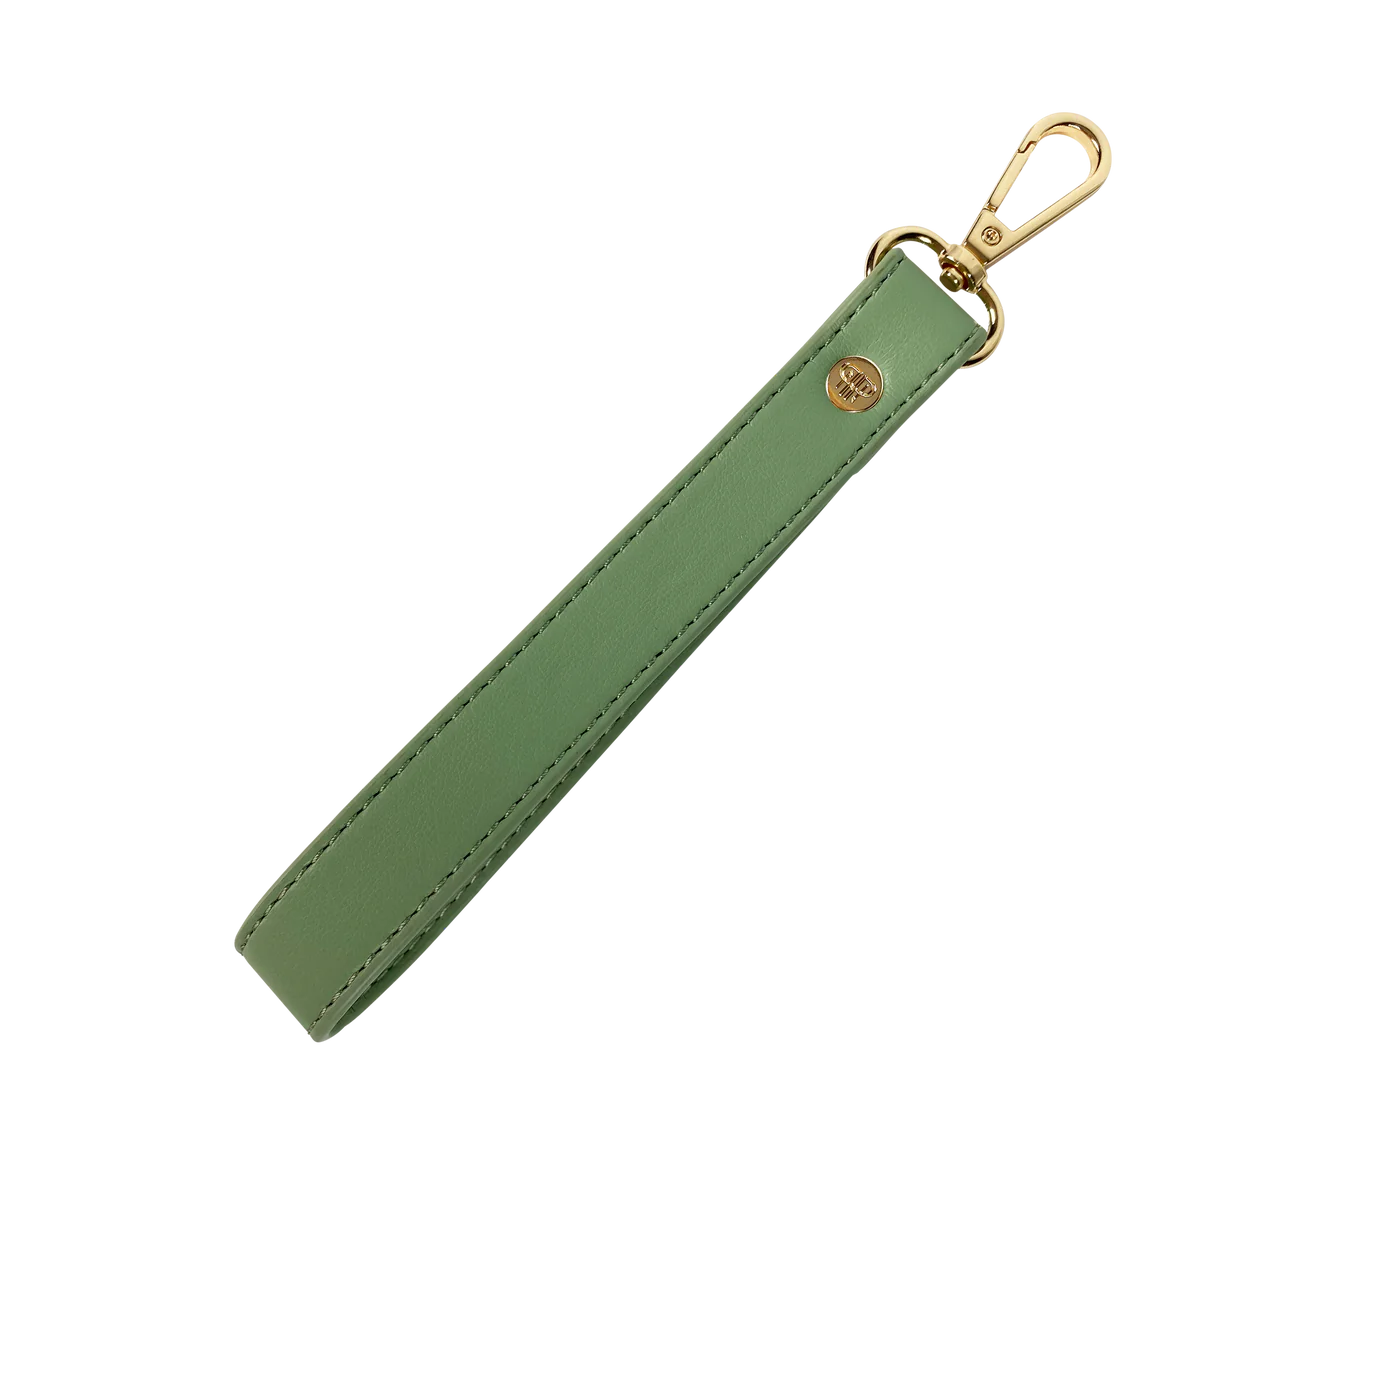 Pursen wristlet strap key chain sage green